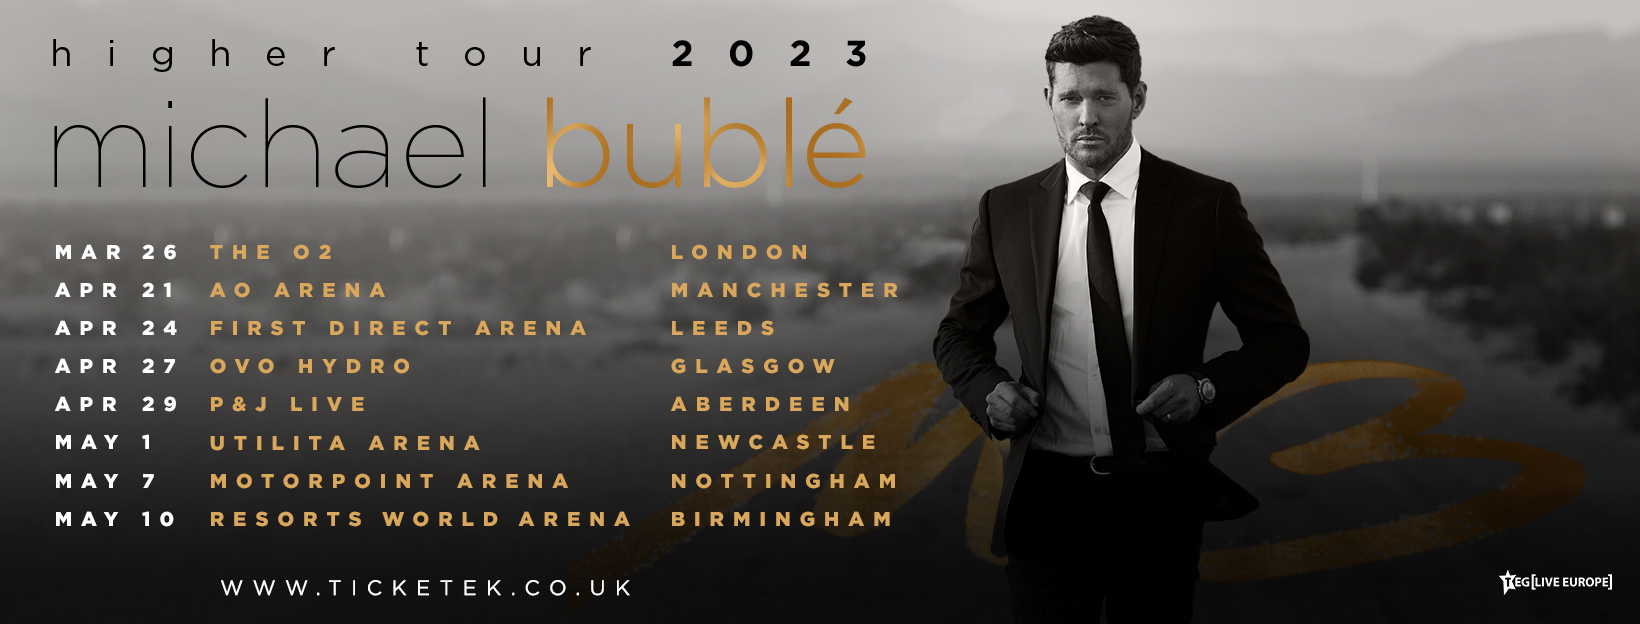 michael buble tour 2023 setlist